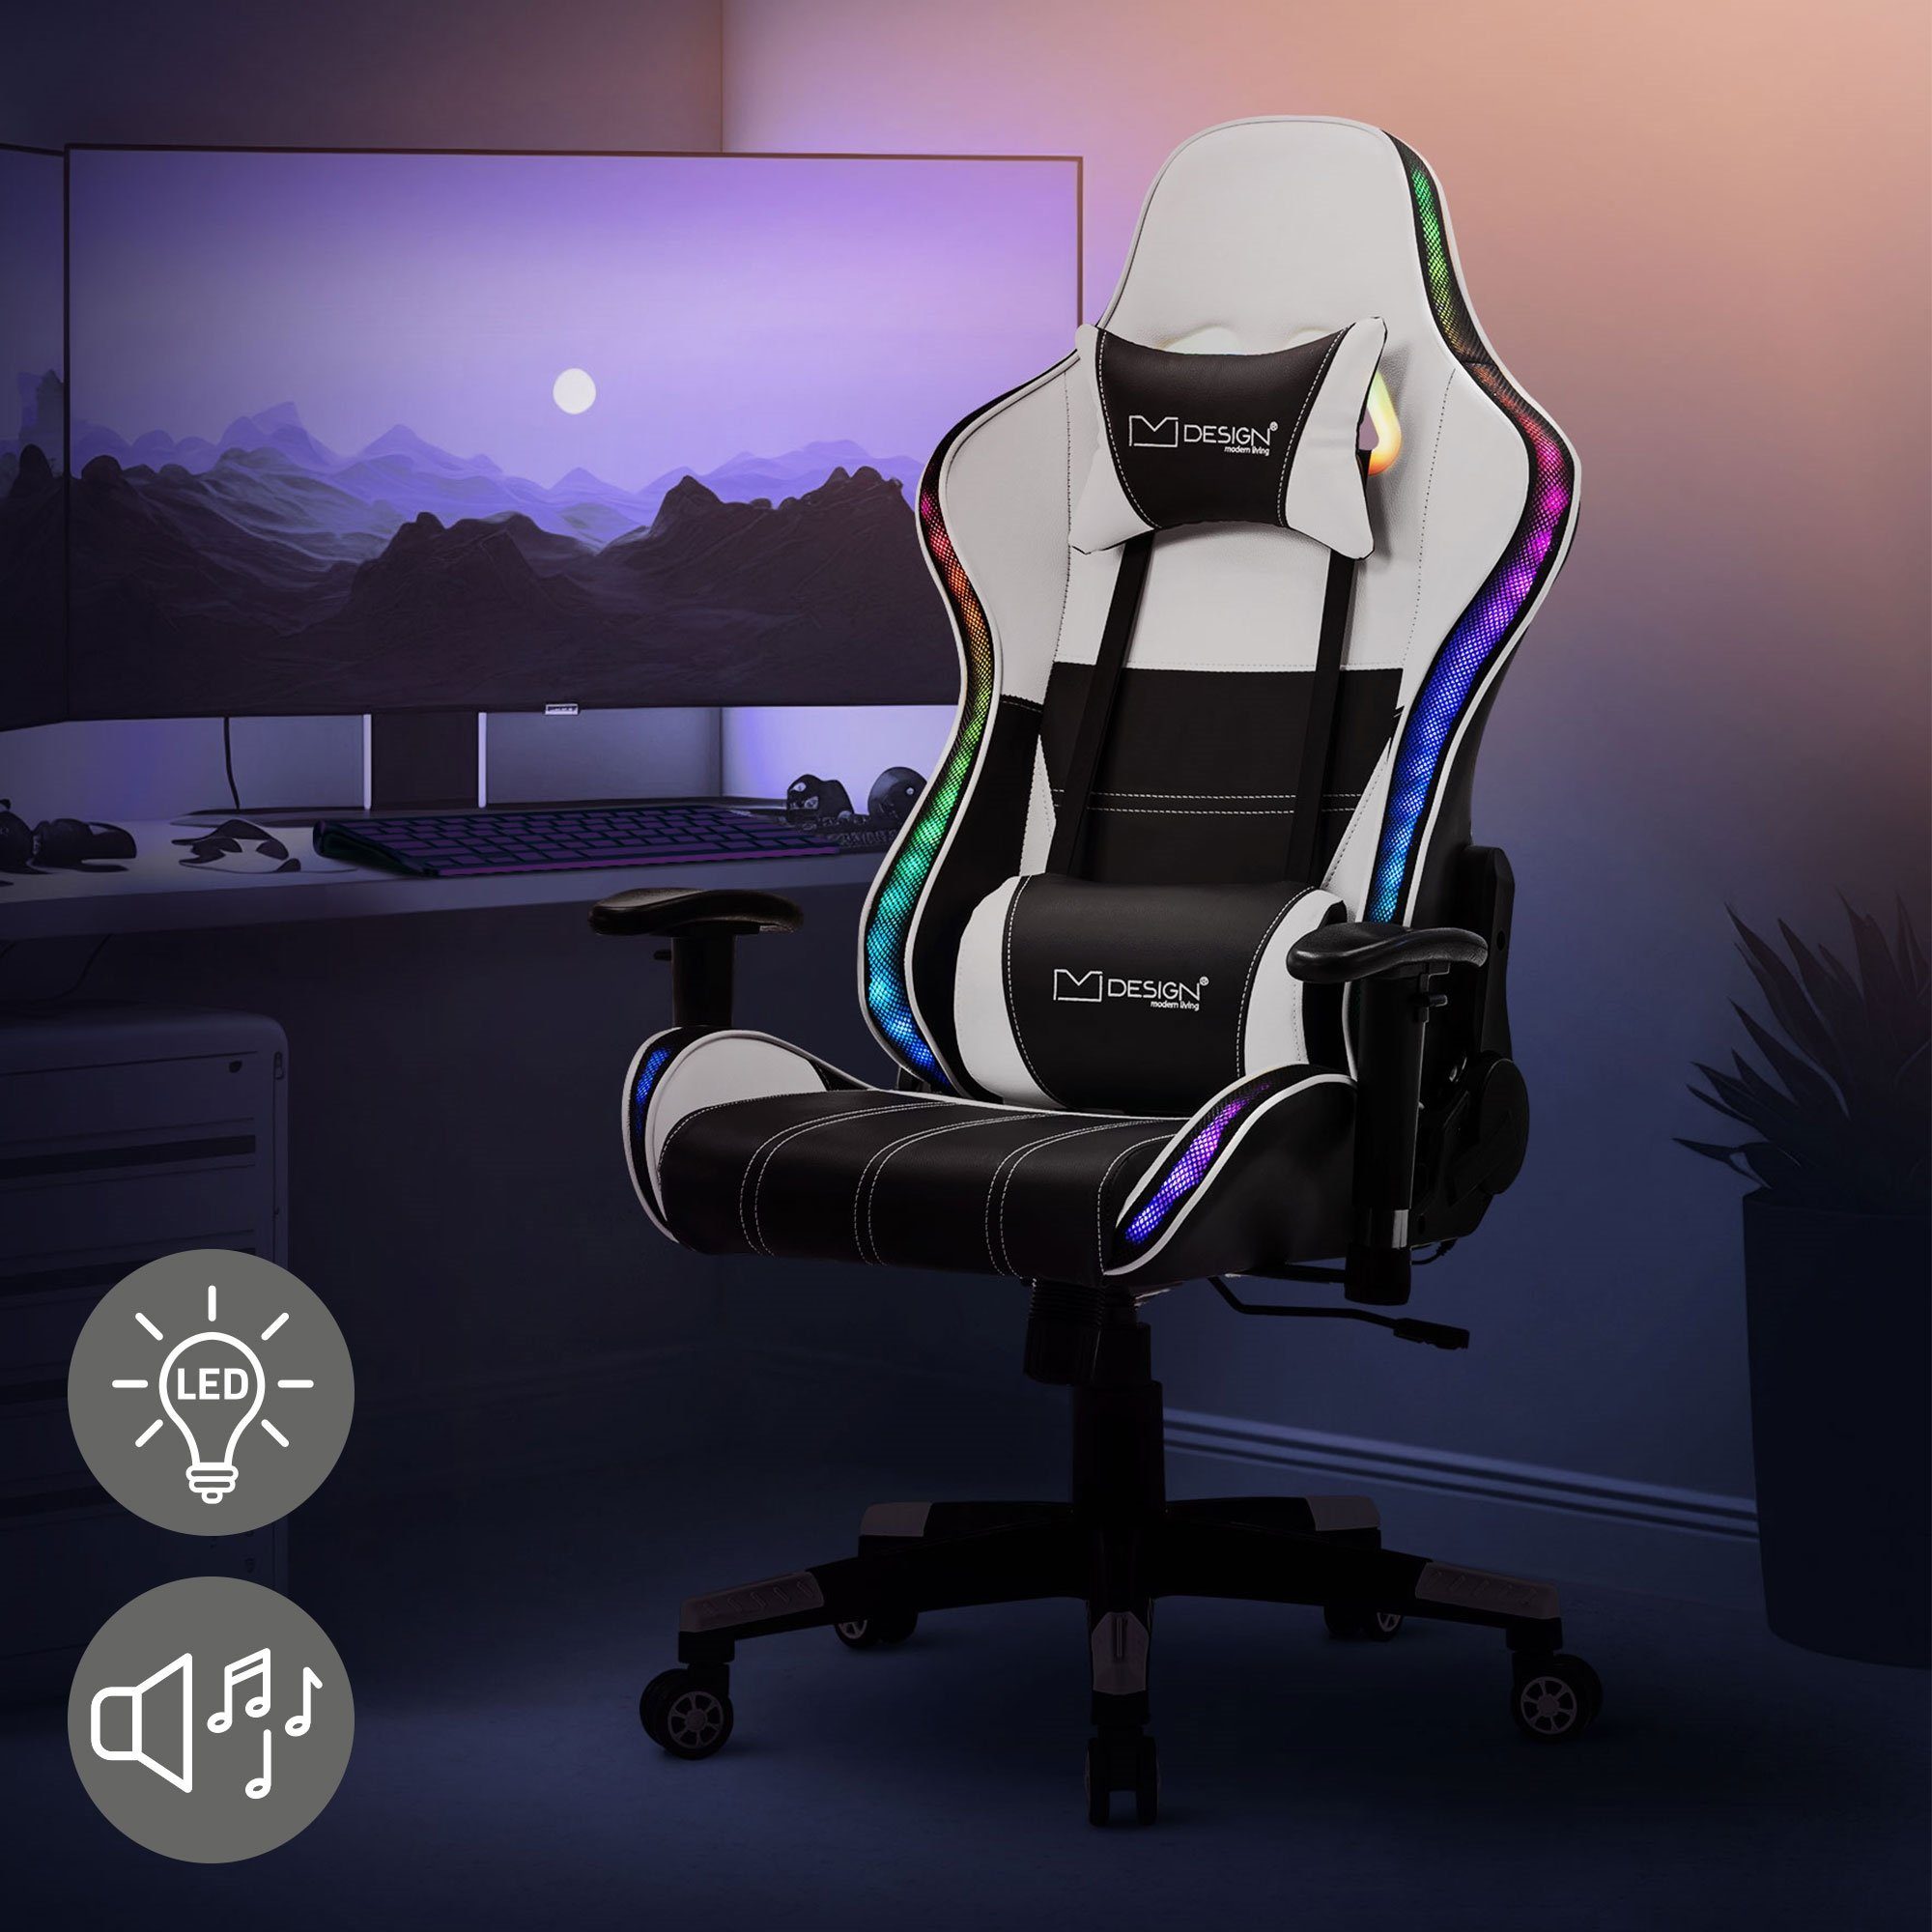 ML-DESIGN Gaming-Stuhl Schreibtischstuhl mit RGB LED-Beleuchtung & Bluetooth-Lautsprechern